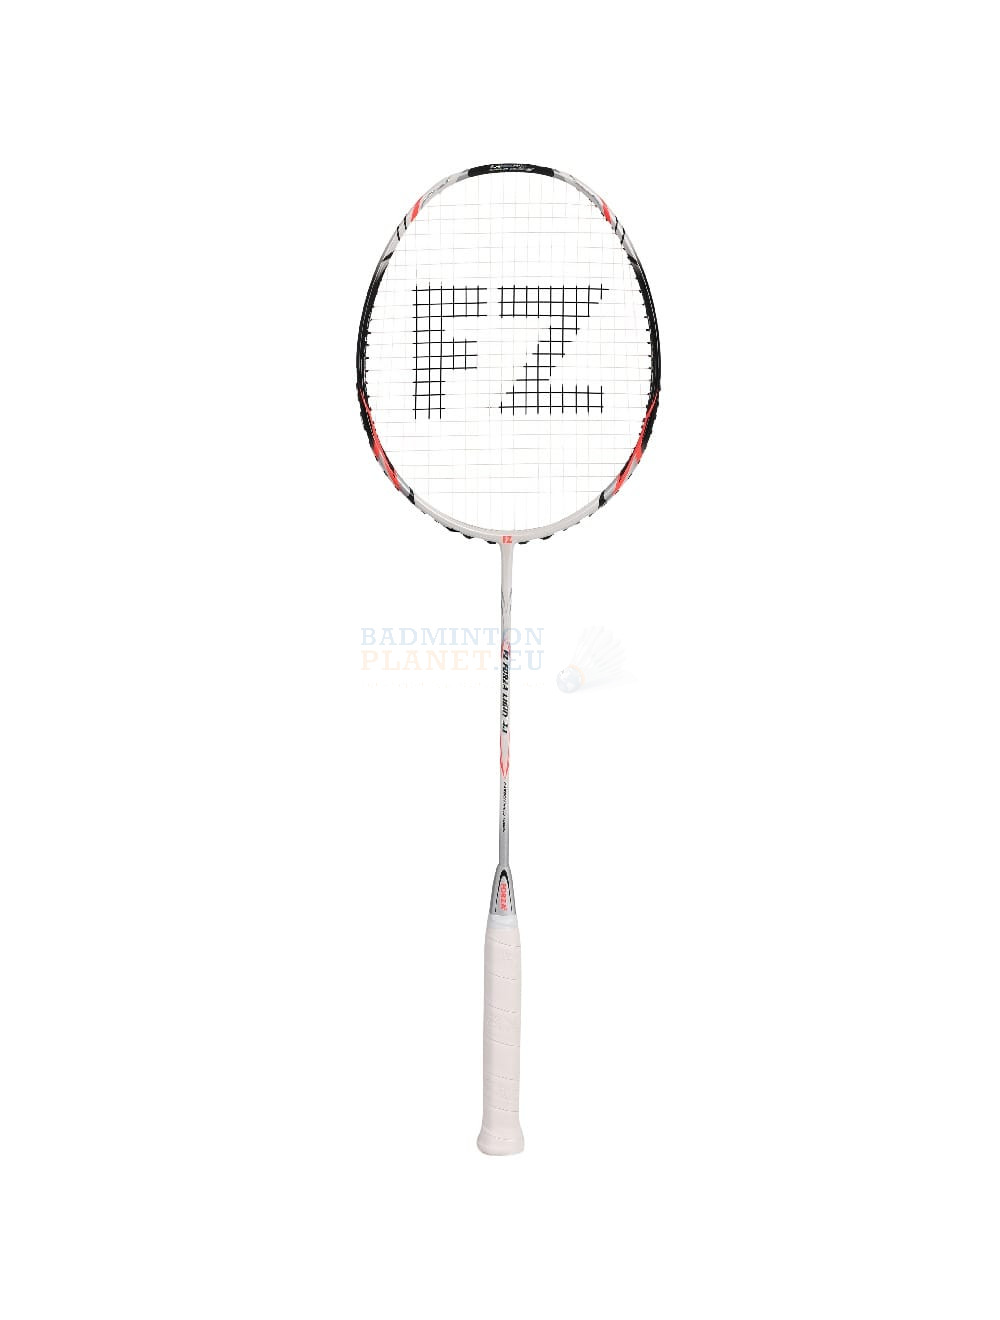 zone Fjendtlig Gammel mand FZ Forza Light 3.1 badminton racket? - Badmintonplanet.eu